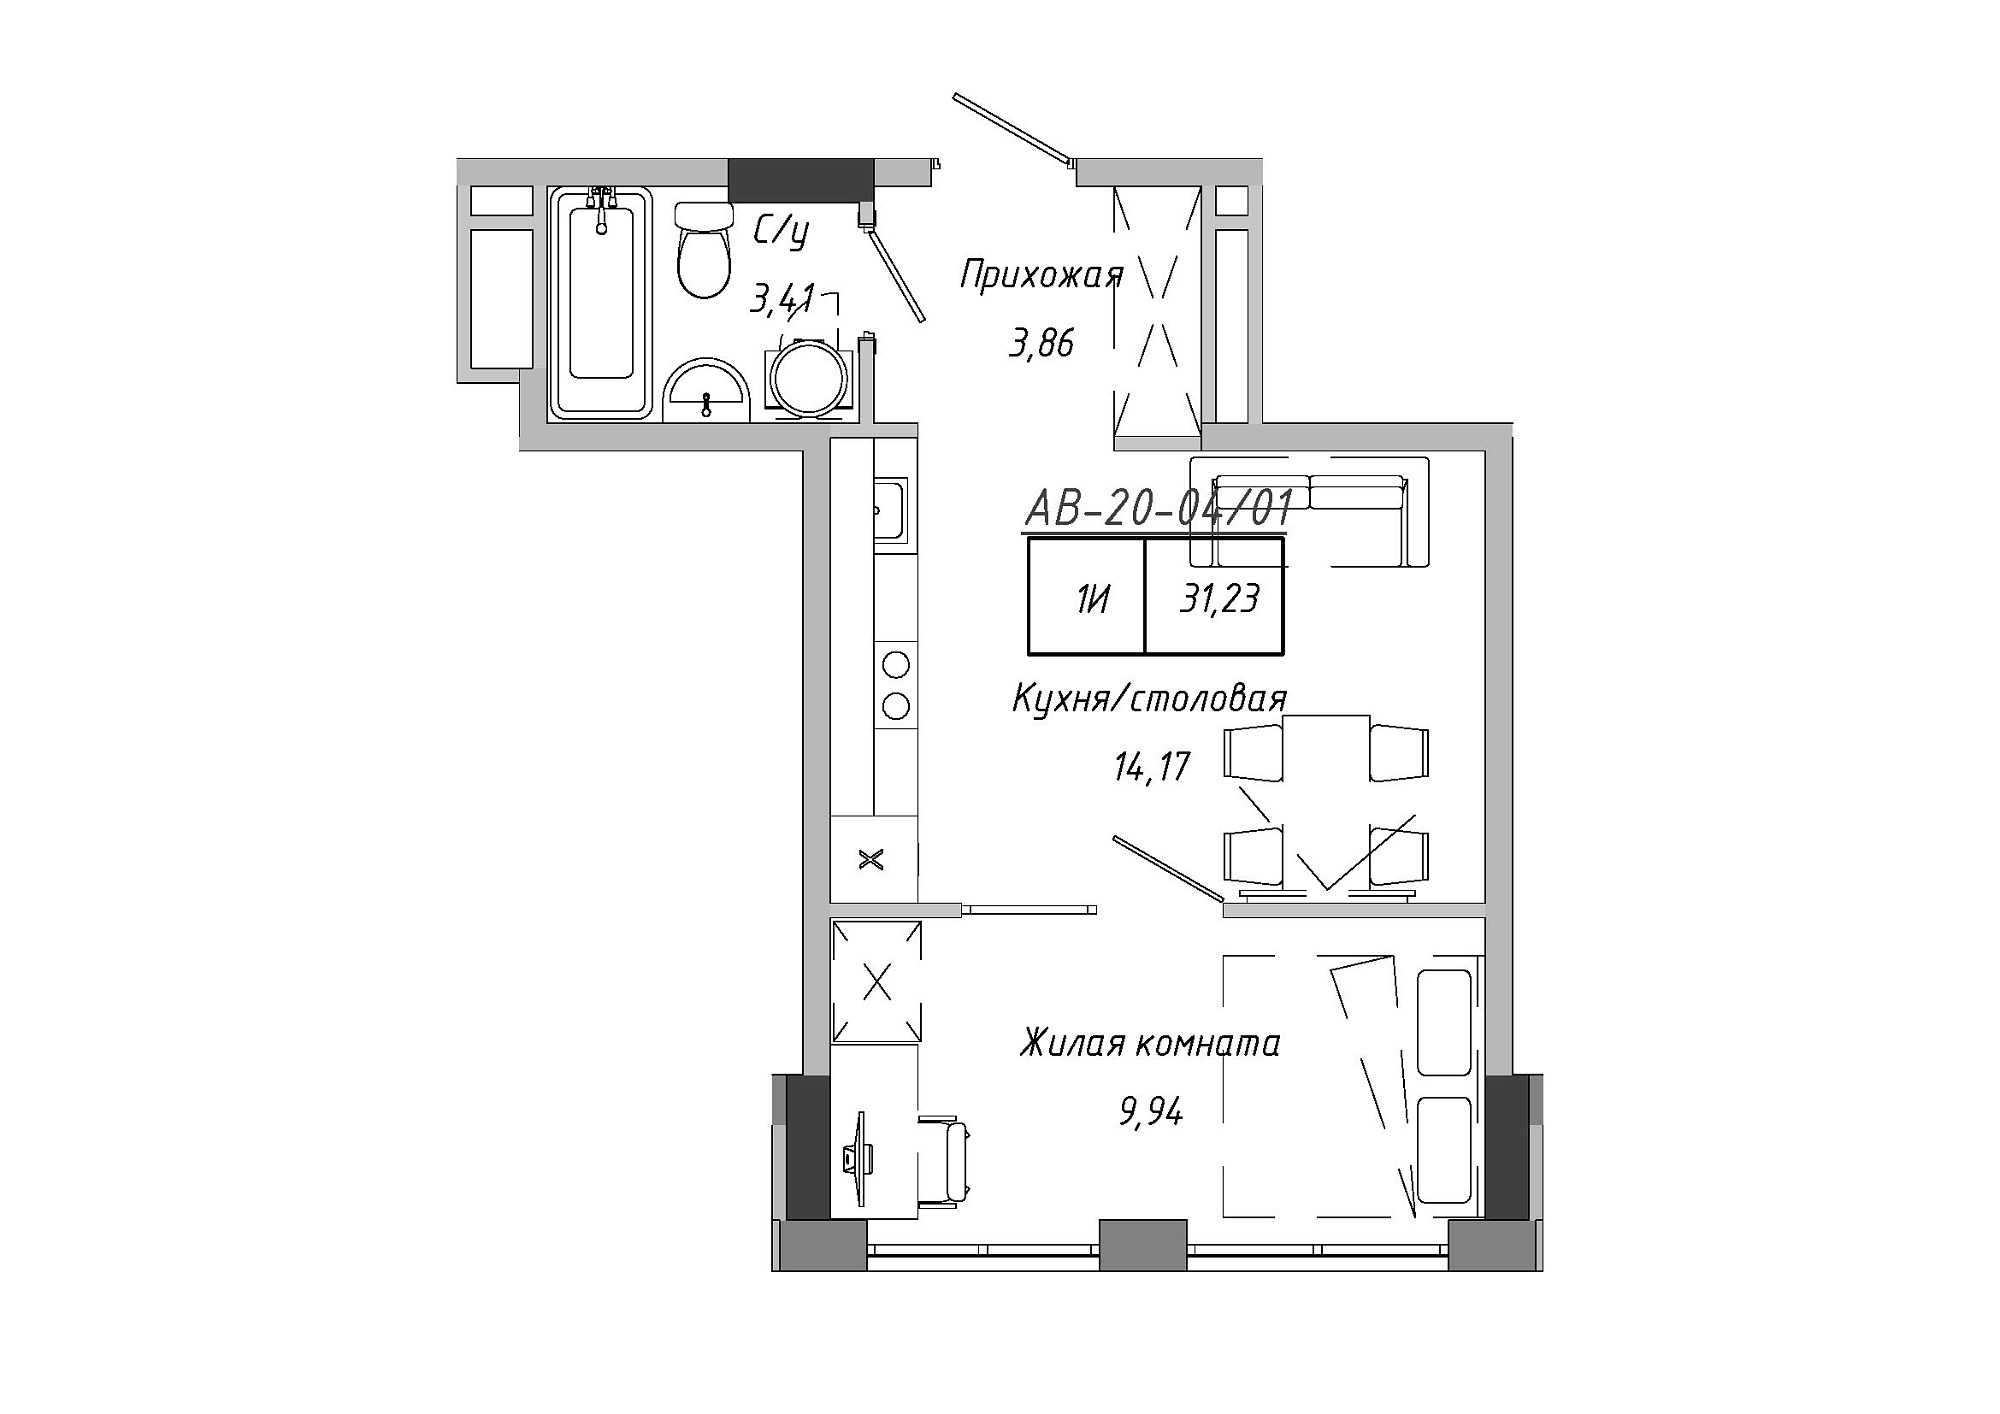 Планування 1-к квартира площею 31.23м2, AB-20-04/00001.